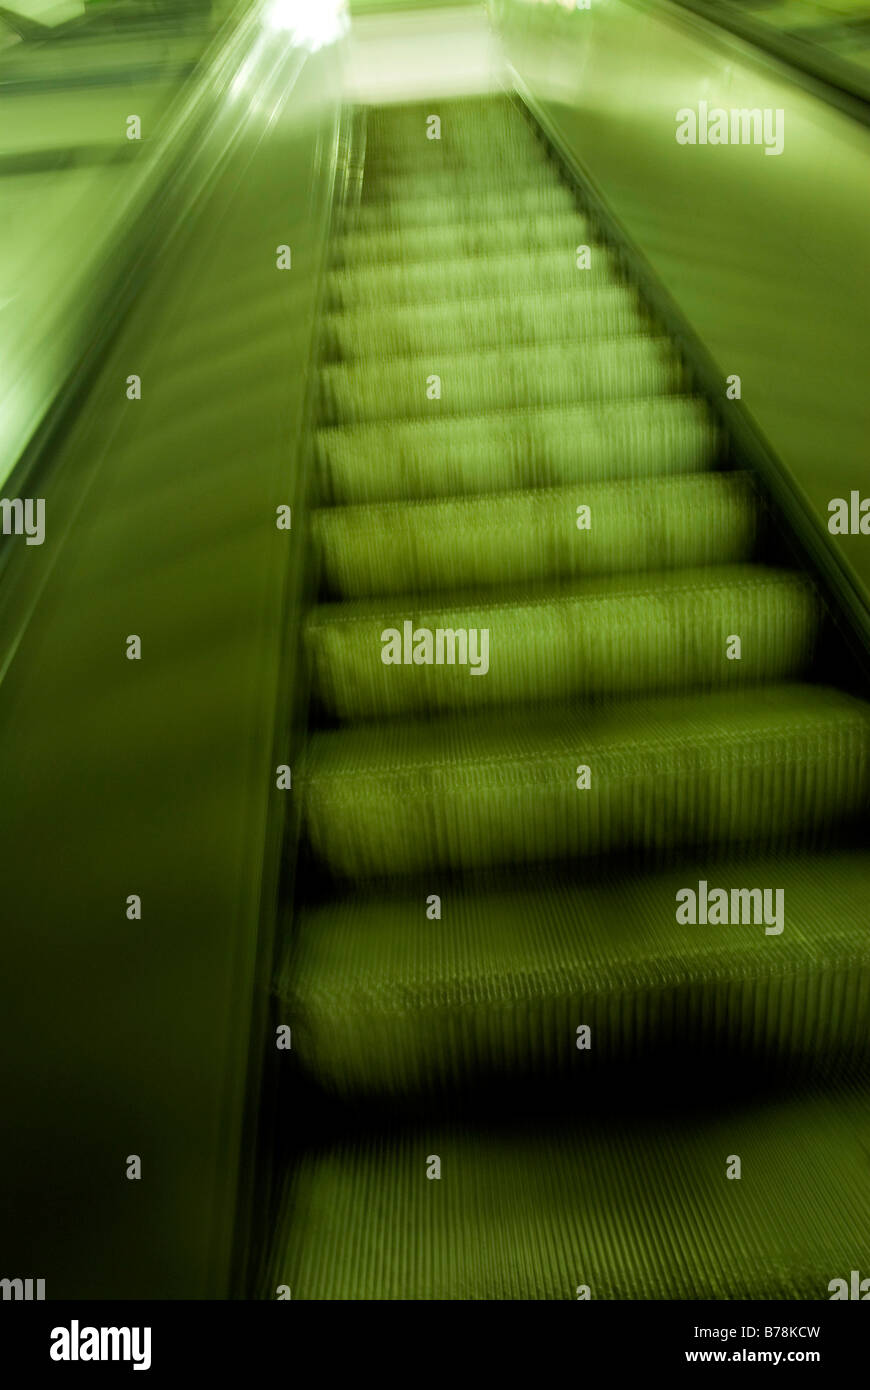 Escalier mécanique, à l'intérieur (blurred motion) Banque D'Images